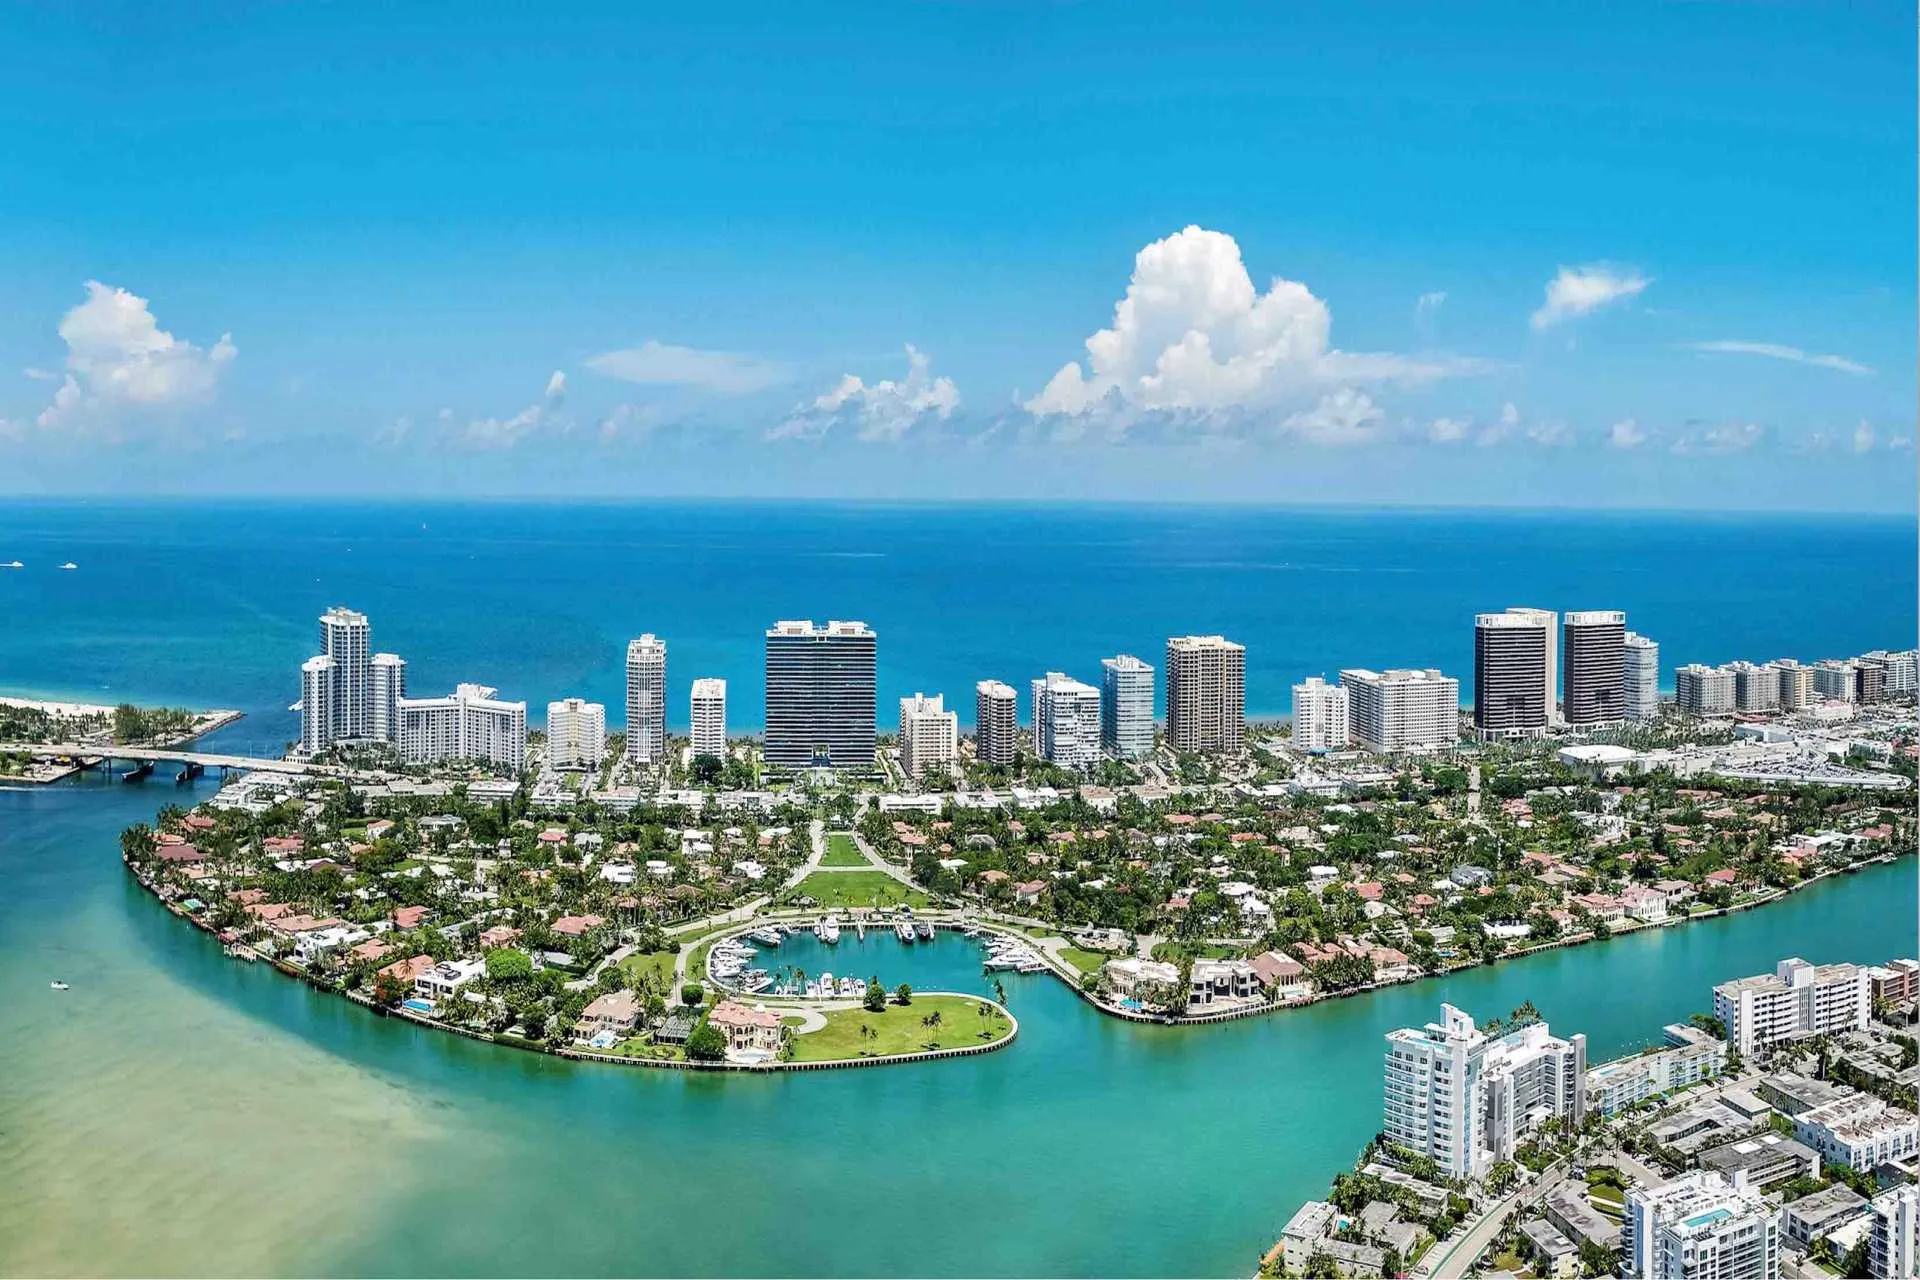 Bal Harbour, la pequeña localidad de Miami frente al mar, convertida en un sofisticado destino internacional, conmemora sus 75 años y los celebra con estilo